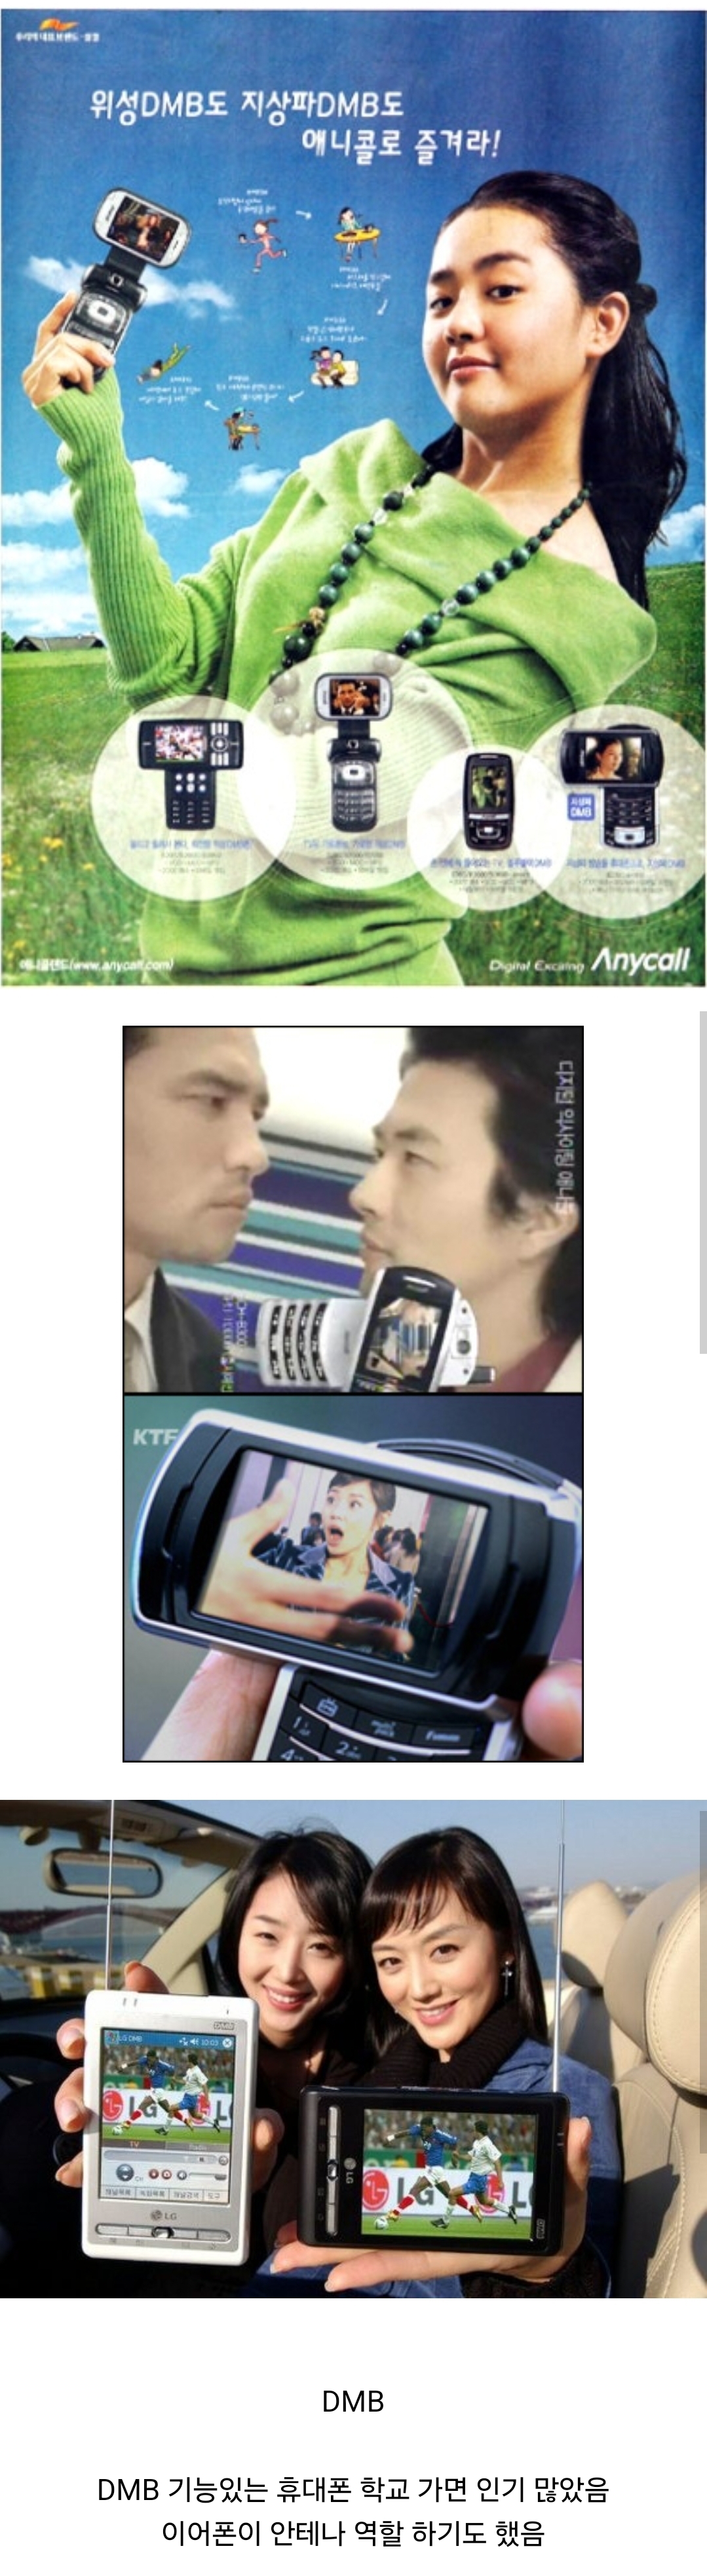 nokbeon.net-휴대폰으로 지상파 티비 보던 시절-1번 이미지